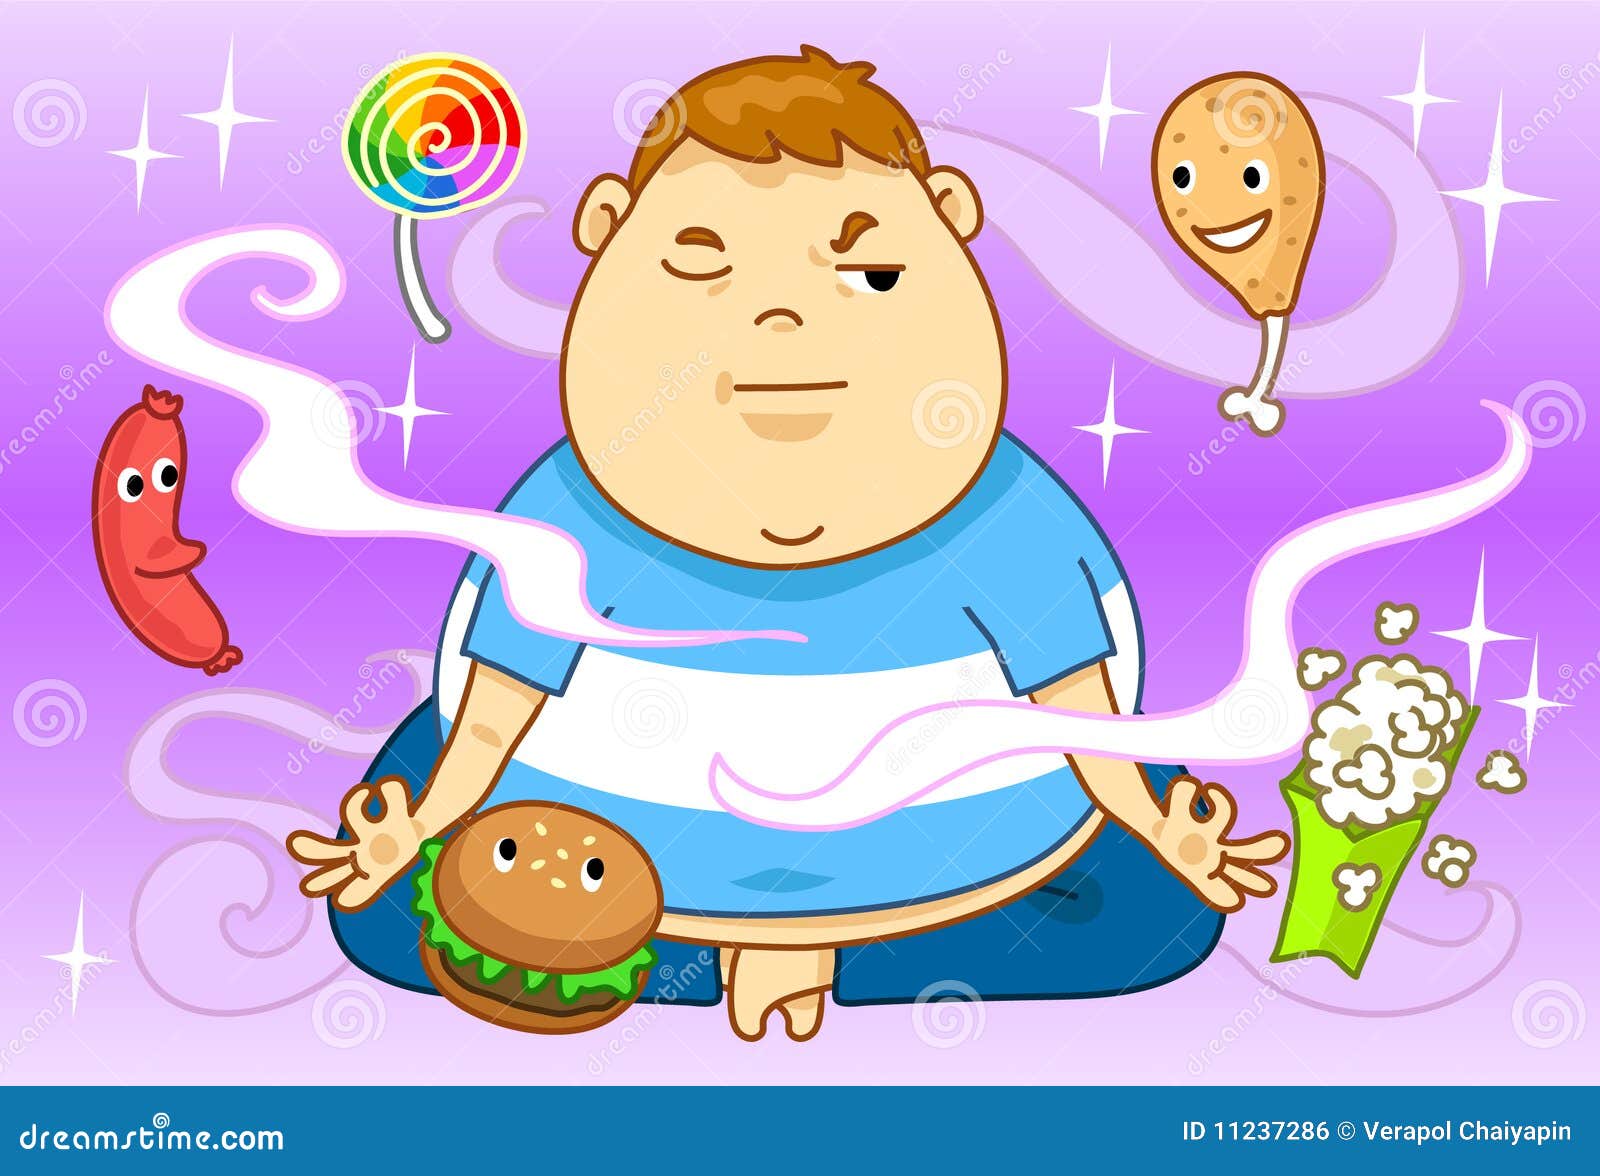 Obesidad y dieta stock de ilustración. Ilustración de dieta - 11237286